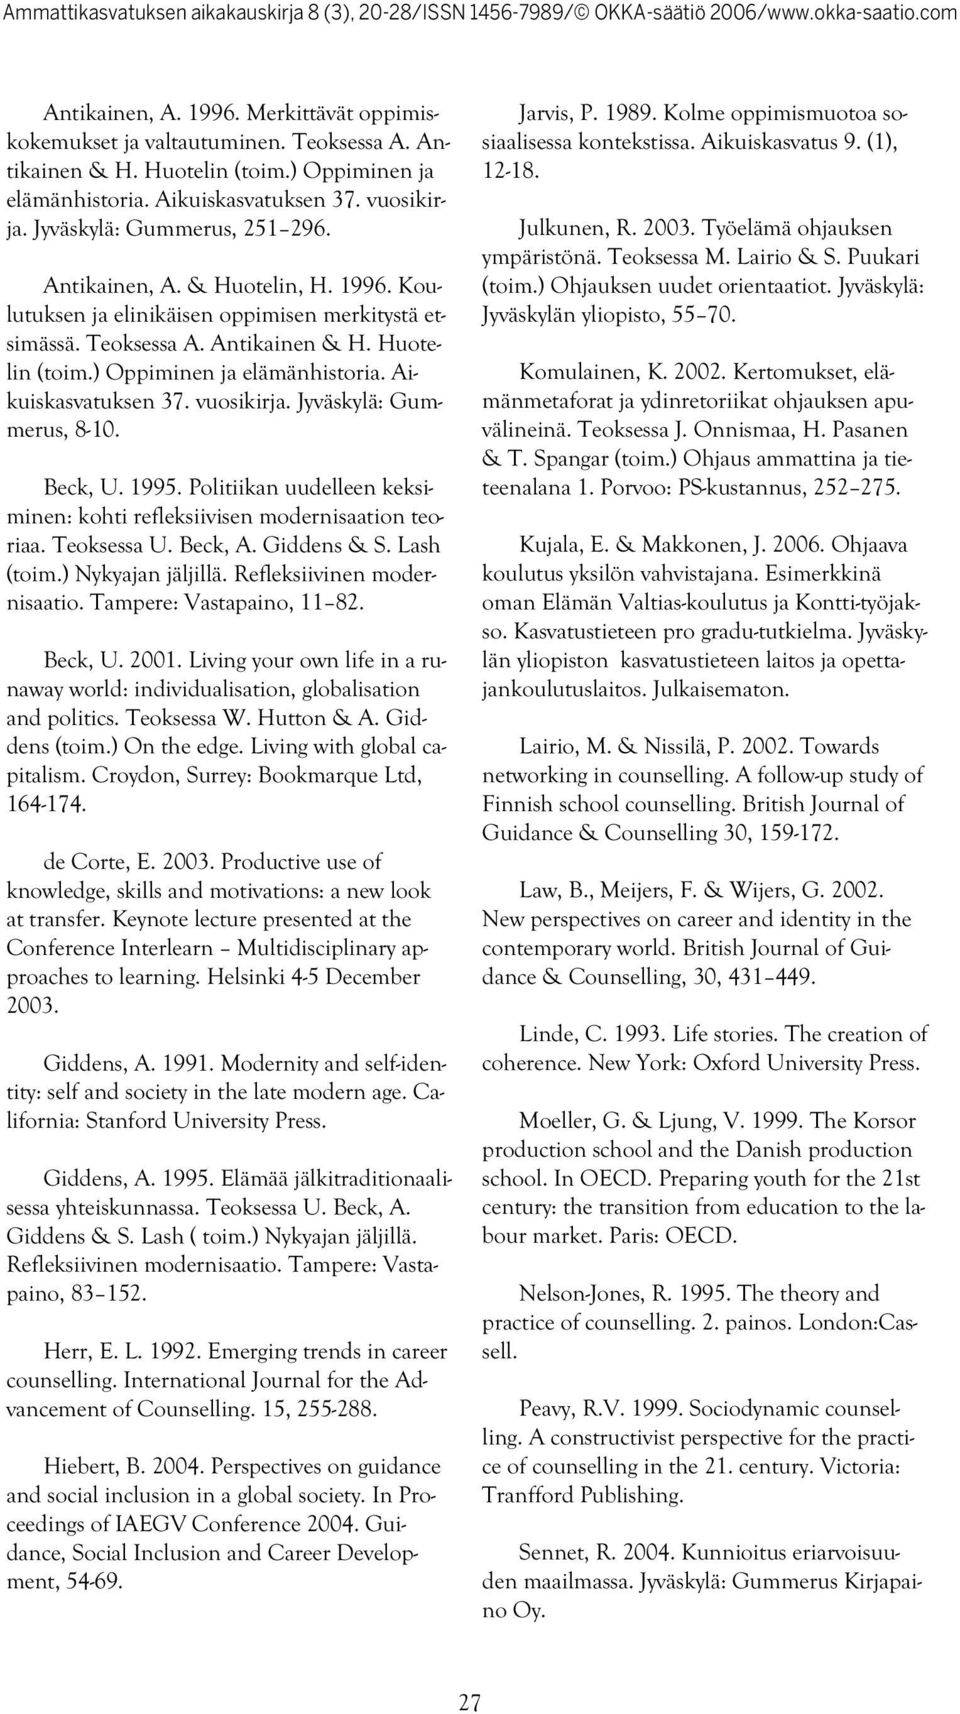 Aikuiskasvatuksen 37. vuosikirja. Jyväskylä: Gummerus, 8-10. Beck, U. 1995. Politiikan uudelleen keksiminen: kohti refleksiivisen modernisaation teoriaa. Teoksessa U. Beck, A. Giddens & S. Lash (toim.